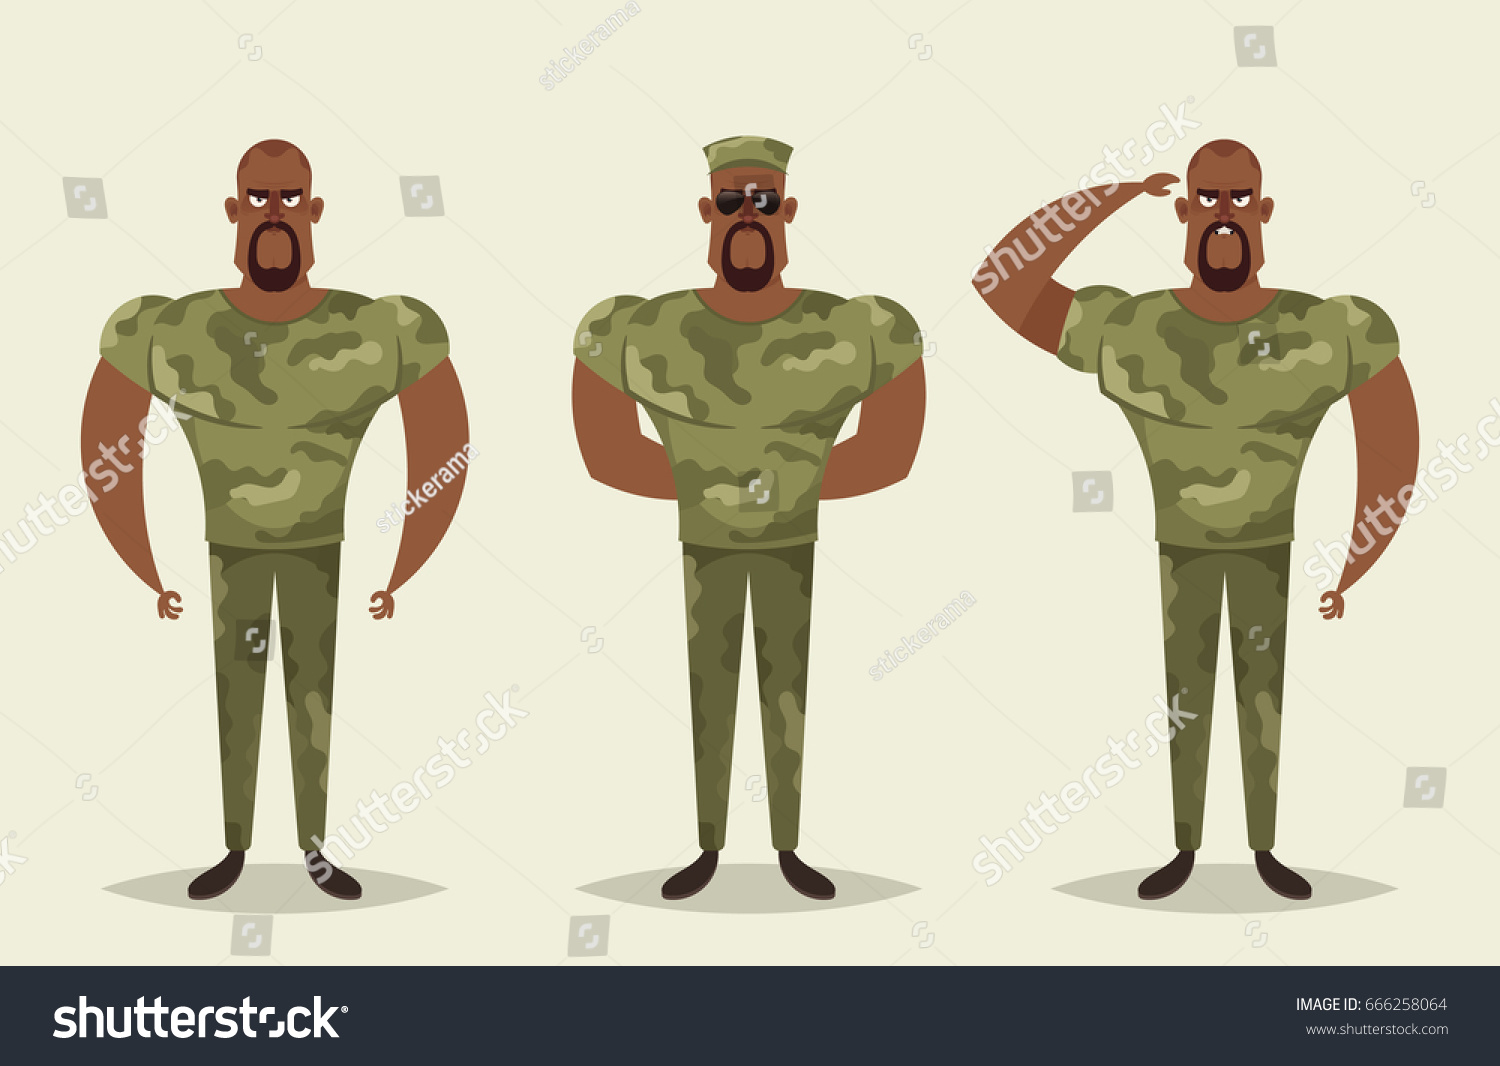 Vetor stock de Cartoon Character Army Soldier Vector Set (livre de